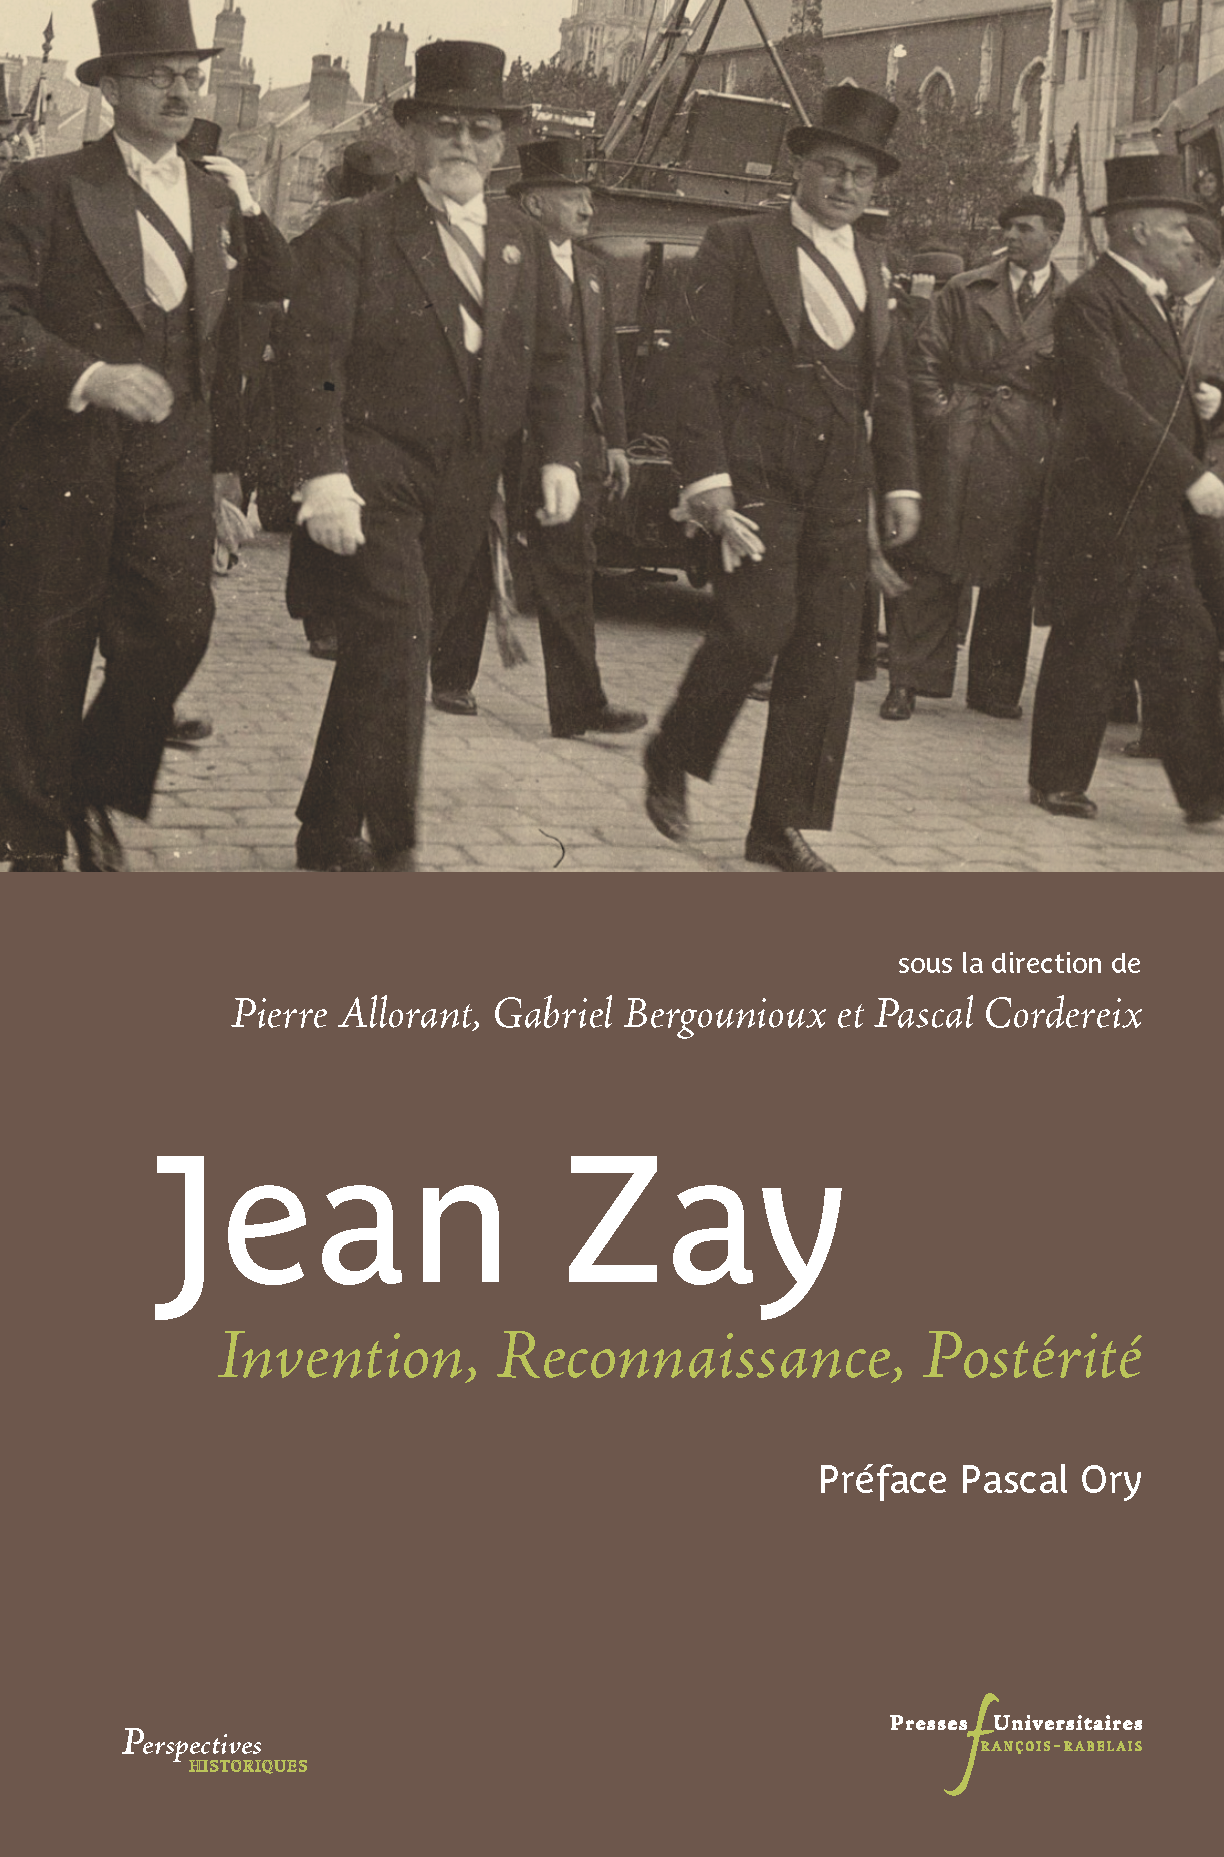 Jean Zay